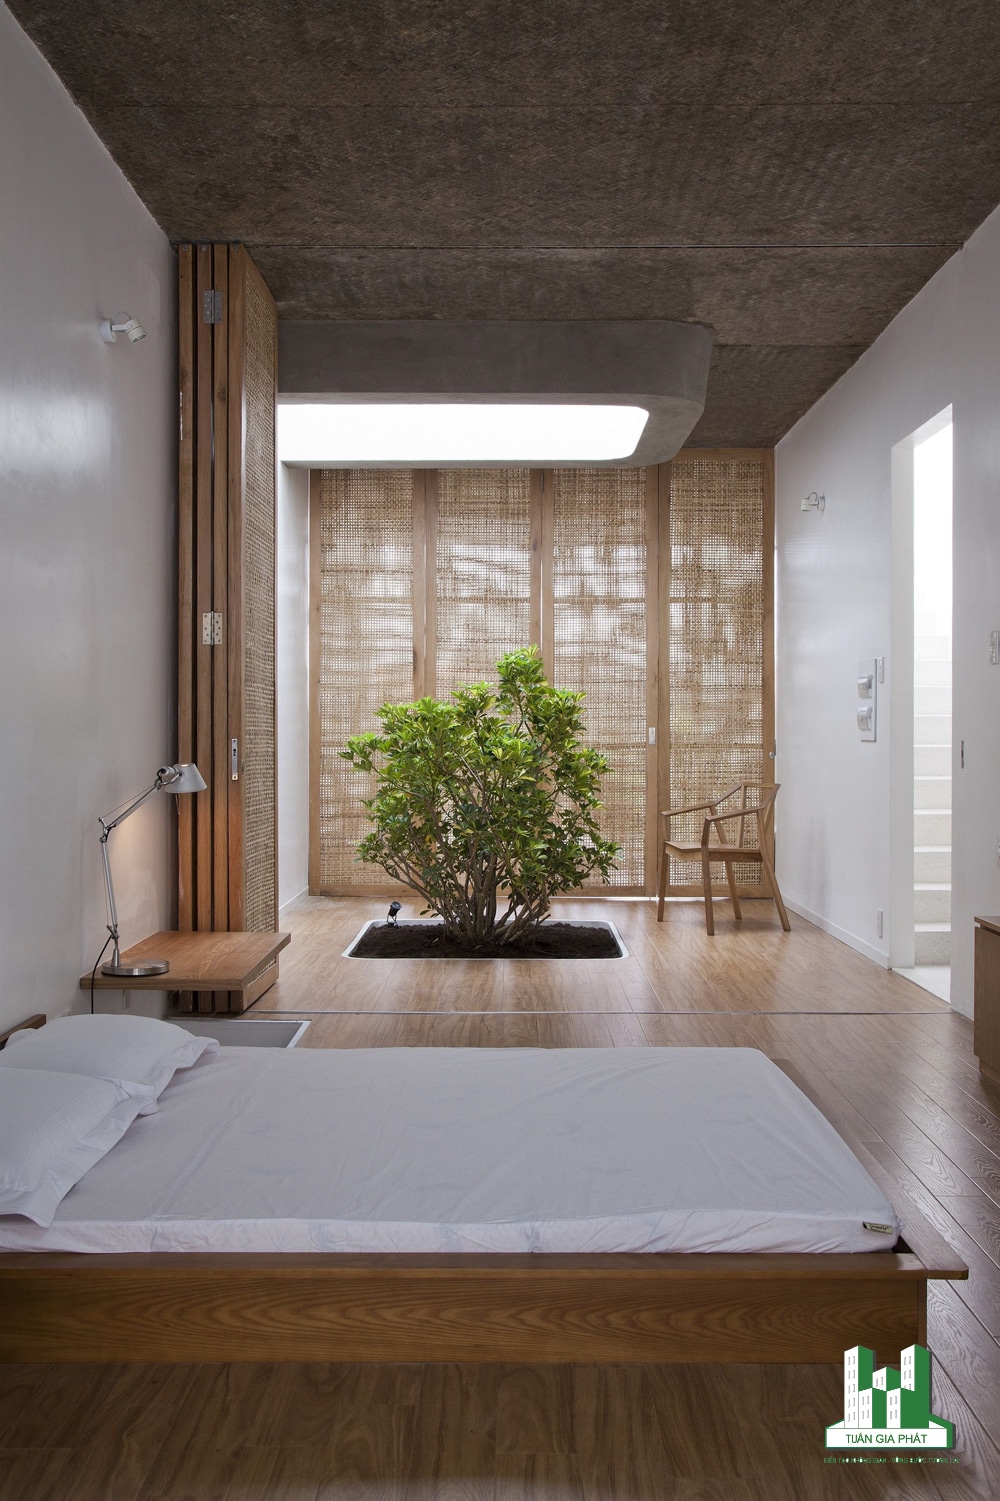  Vẫn mang hơi hướng thiền, căn phòng đậm chất tự nhiên với đồ trang trí nội thất dáng thấp, một cây xanh, các tấm chắn bằng gỗ.